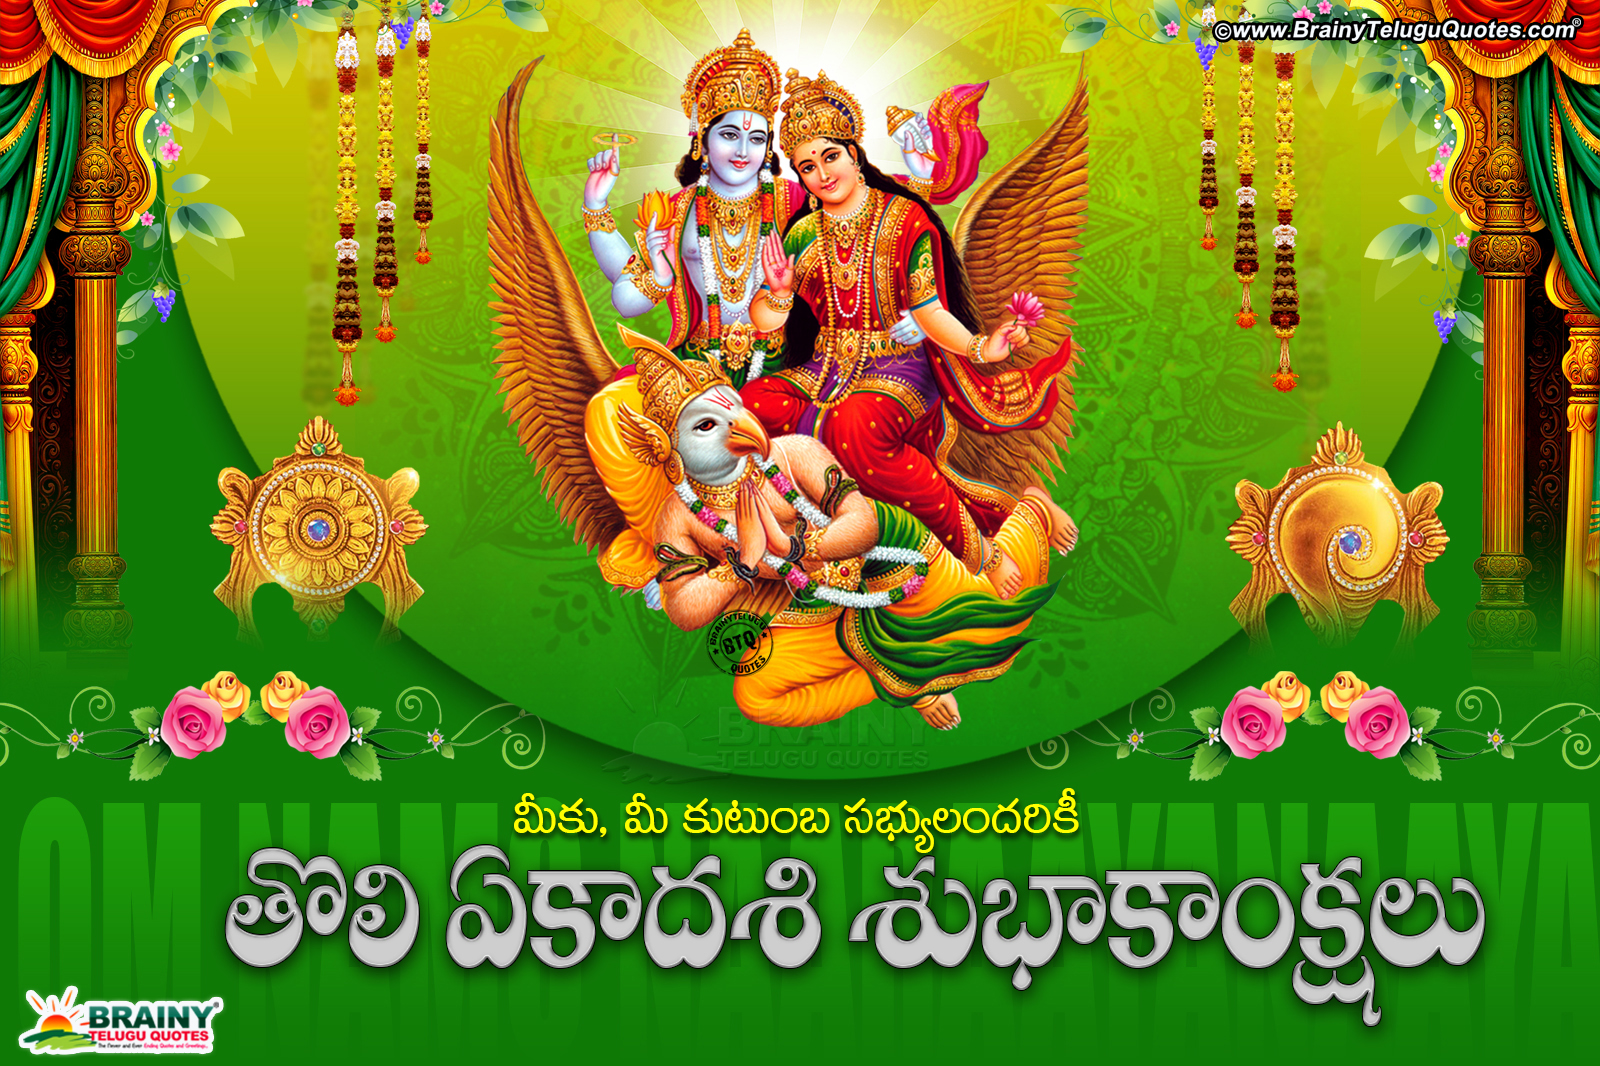 Telugu Quotes, Greetings, Lord Vishnu Png Images Free - Laxmi Narayan God - HD Wallpaper 